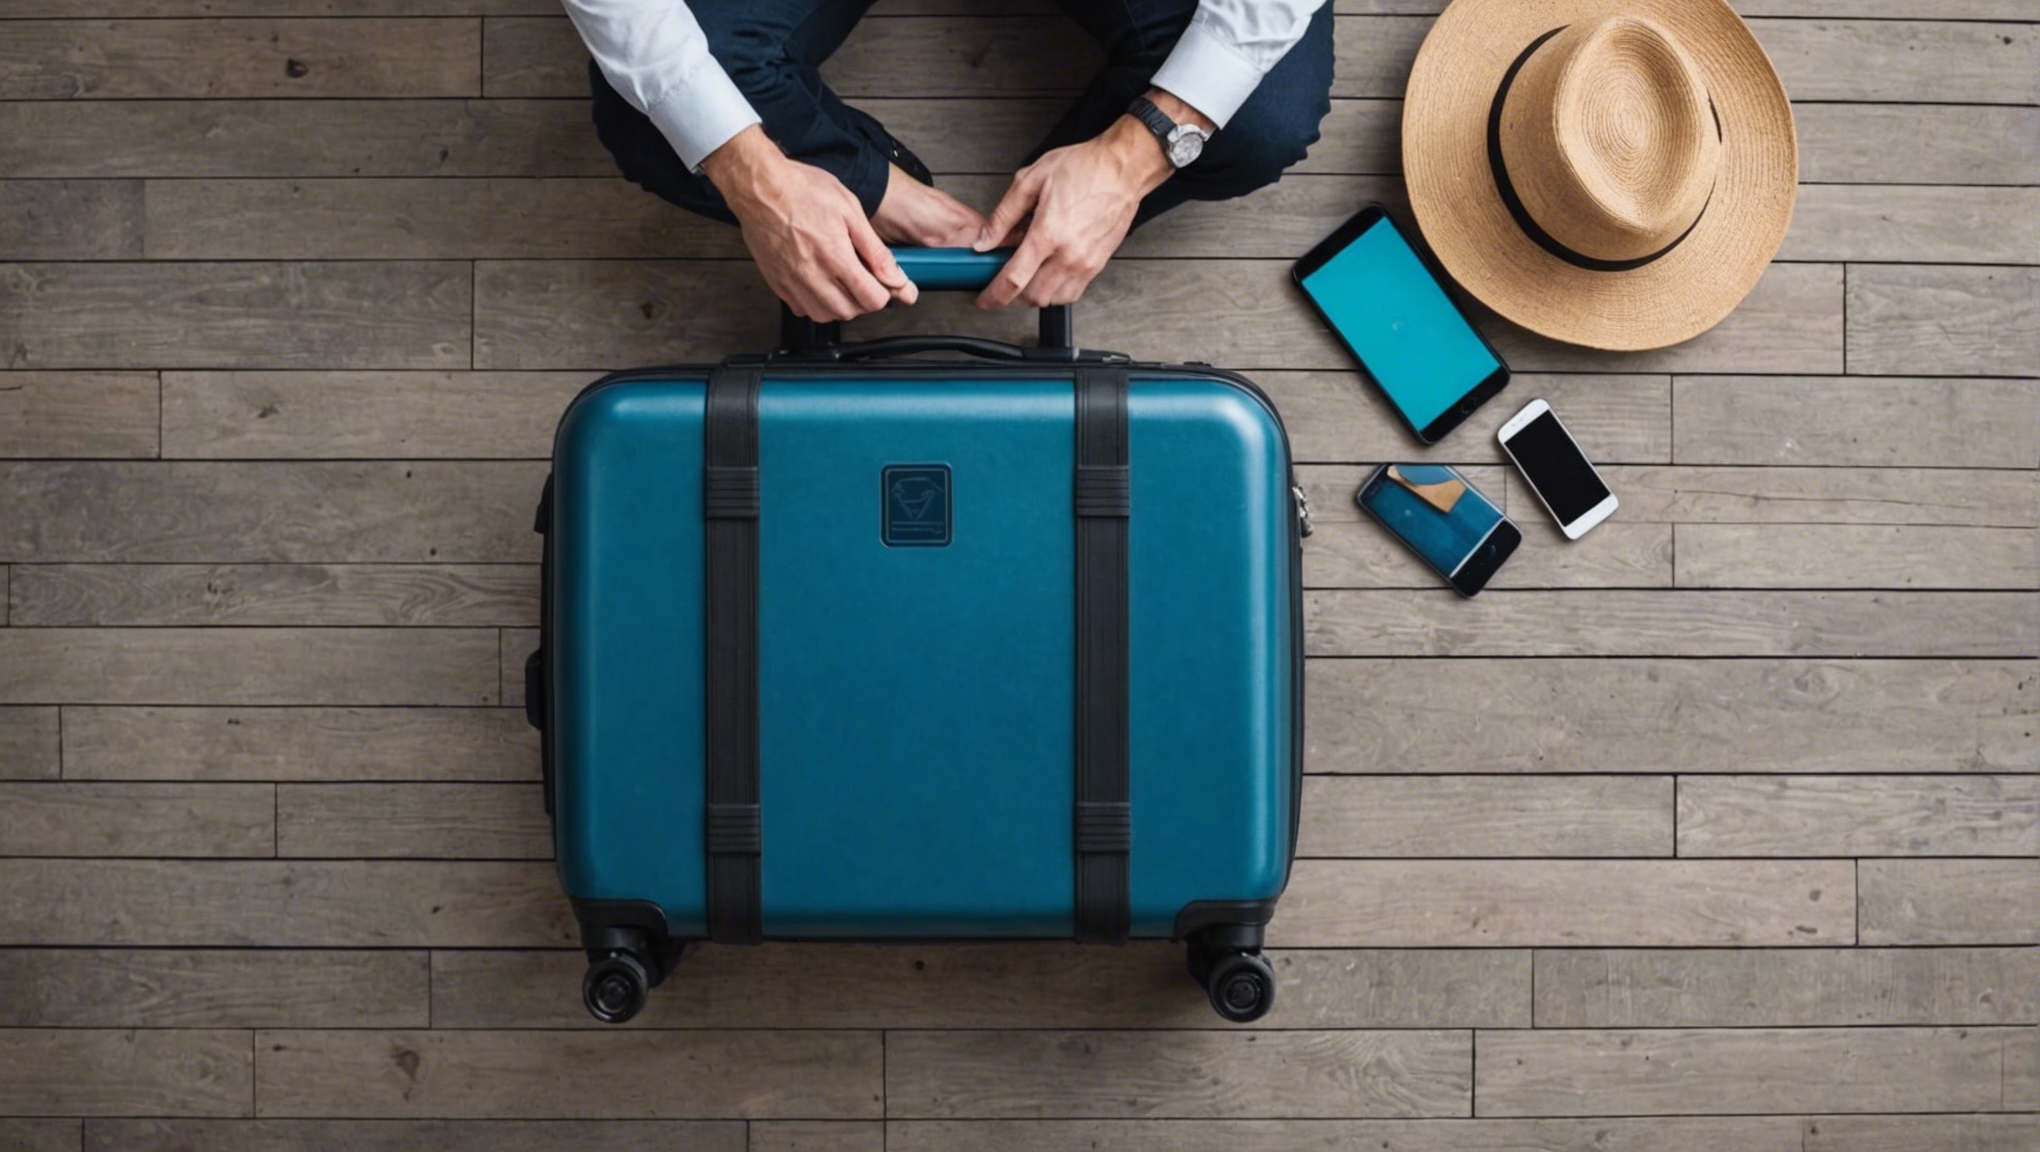 découvrez les meilleures astuces pour garantir la sécurité de votre valise lors de vos voyages grâce à nos conseils pratiques et efficaces.